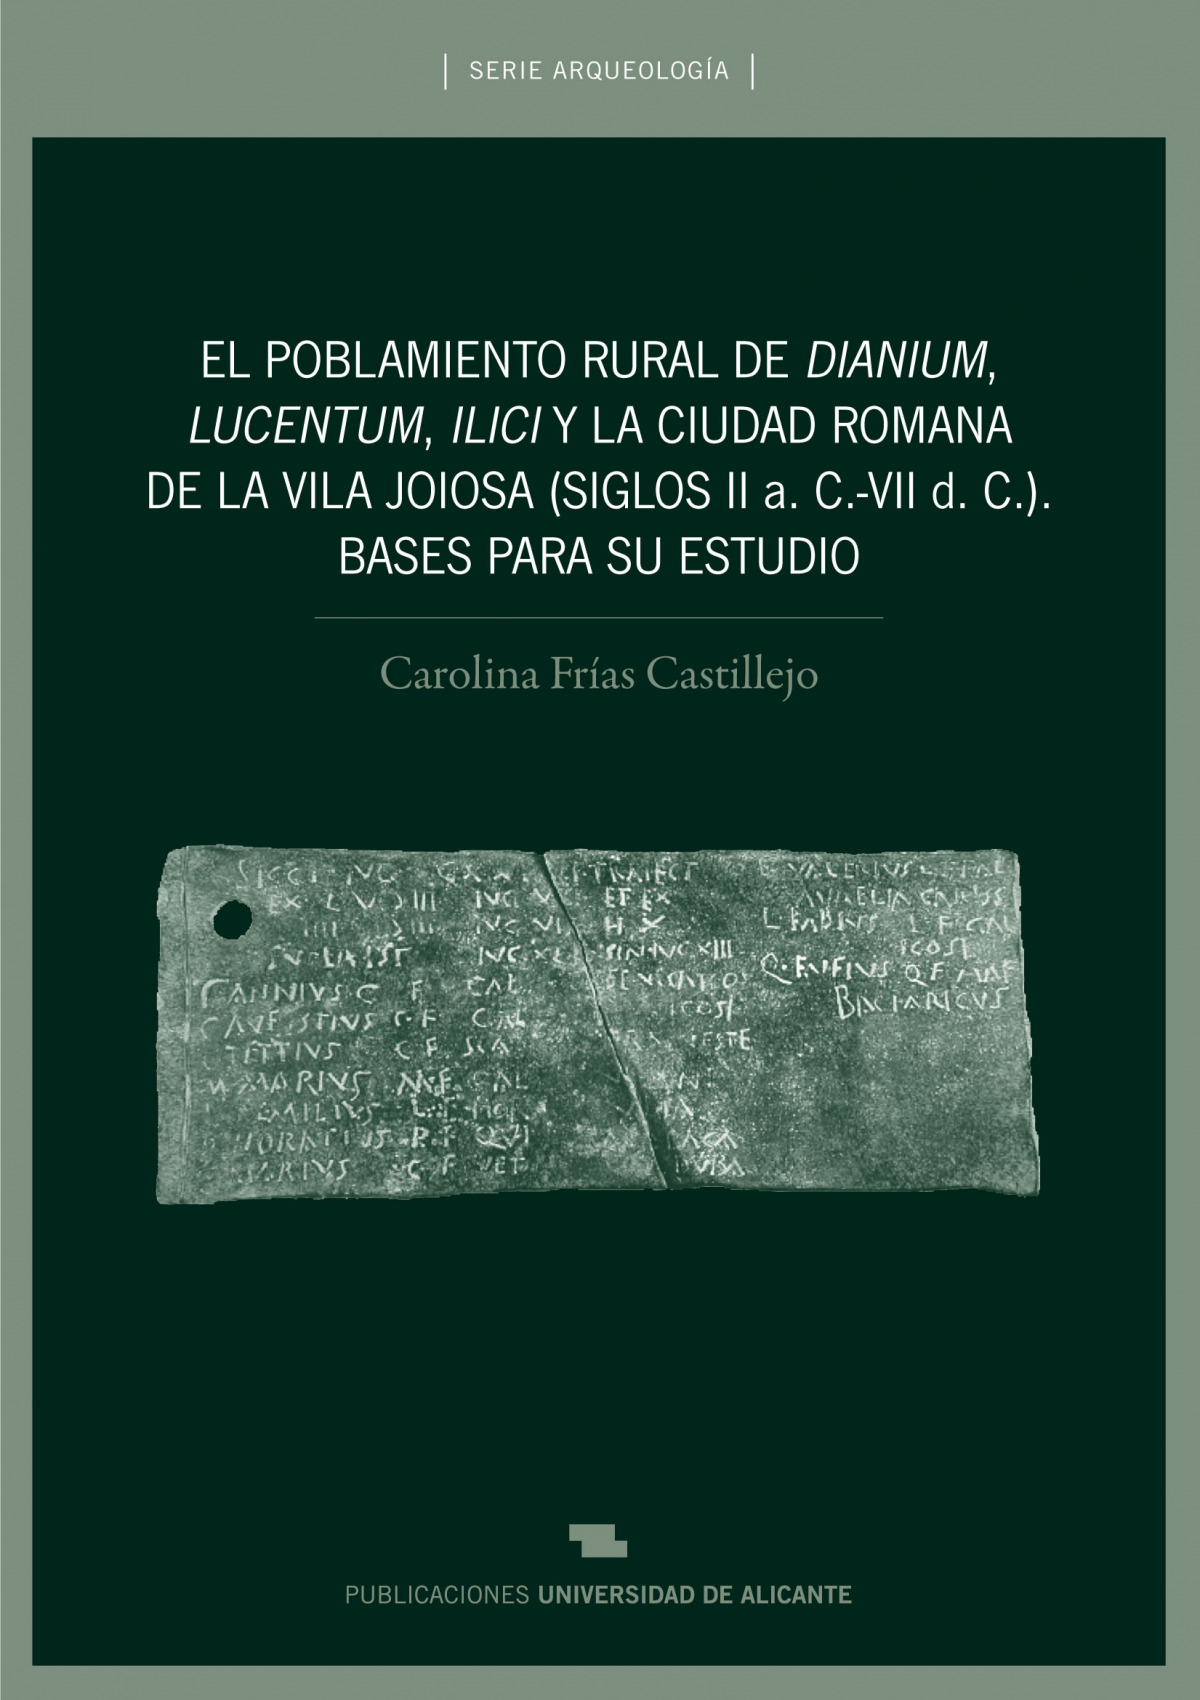 Poblamiento rural de dianium lucentum, ilici y ciudad romana - Carolina Frias